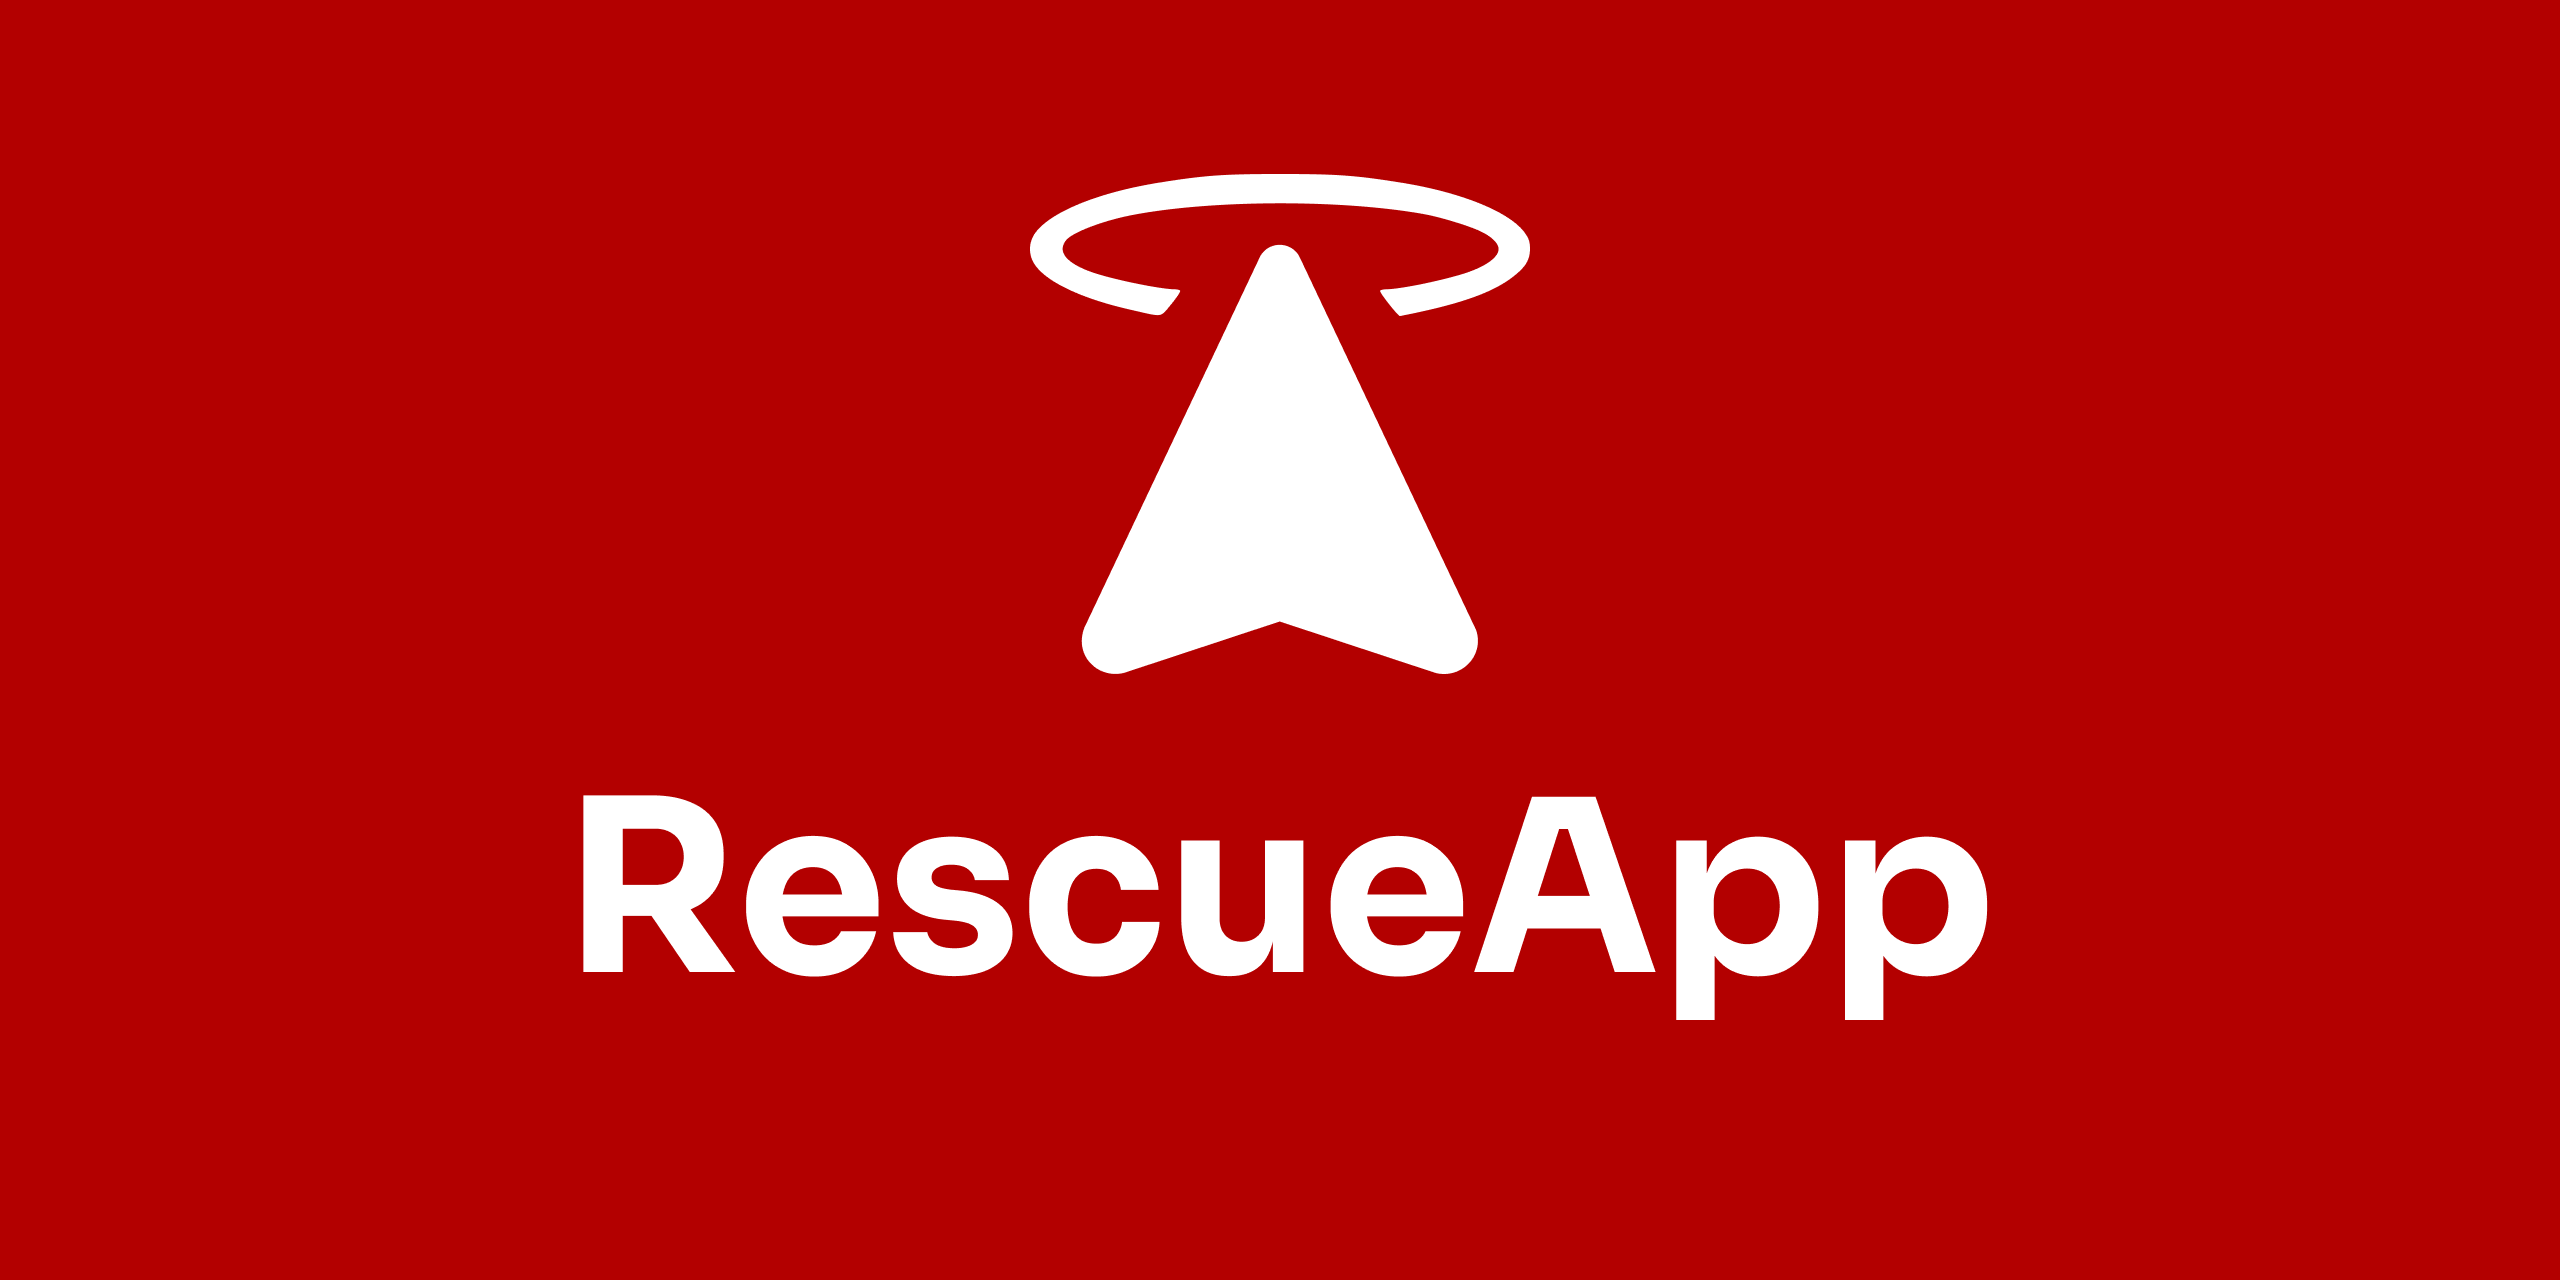 RescueApp